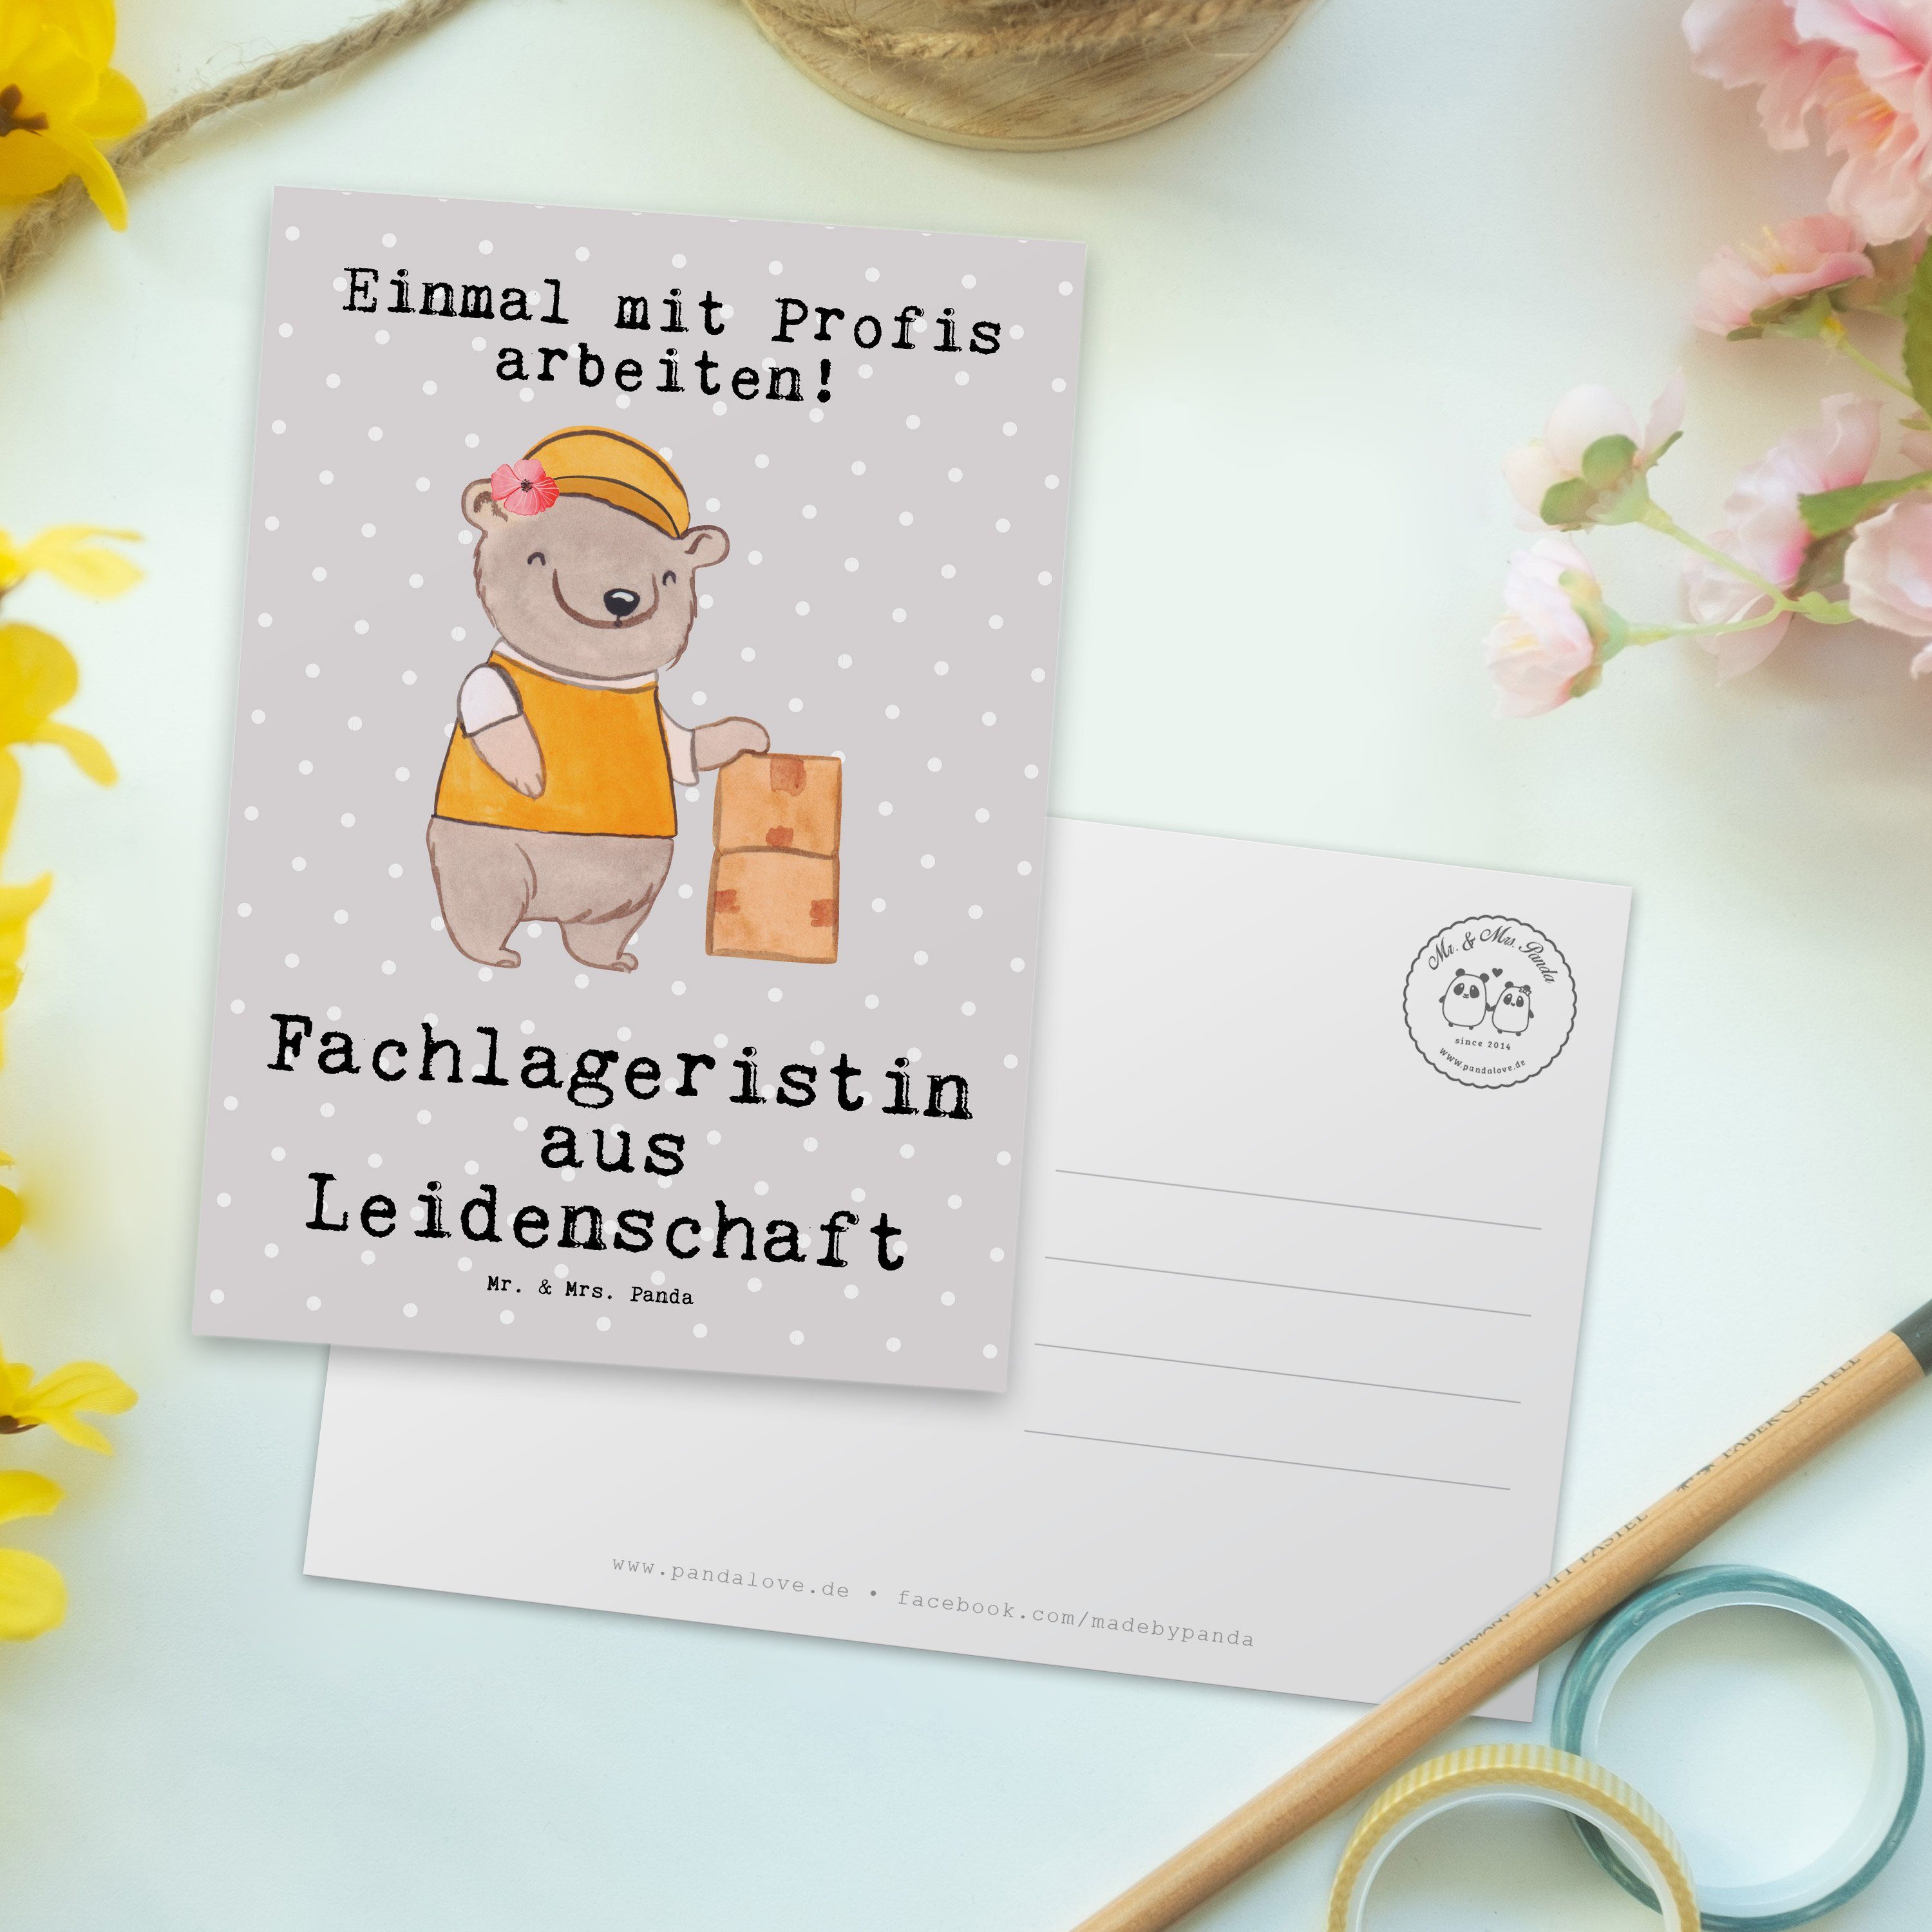 Mr. & Mrs. Jubiläum aus Panda - Pastell - Fachlageristin Grau Geschenk, Postkarte Leidenschaft